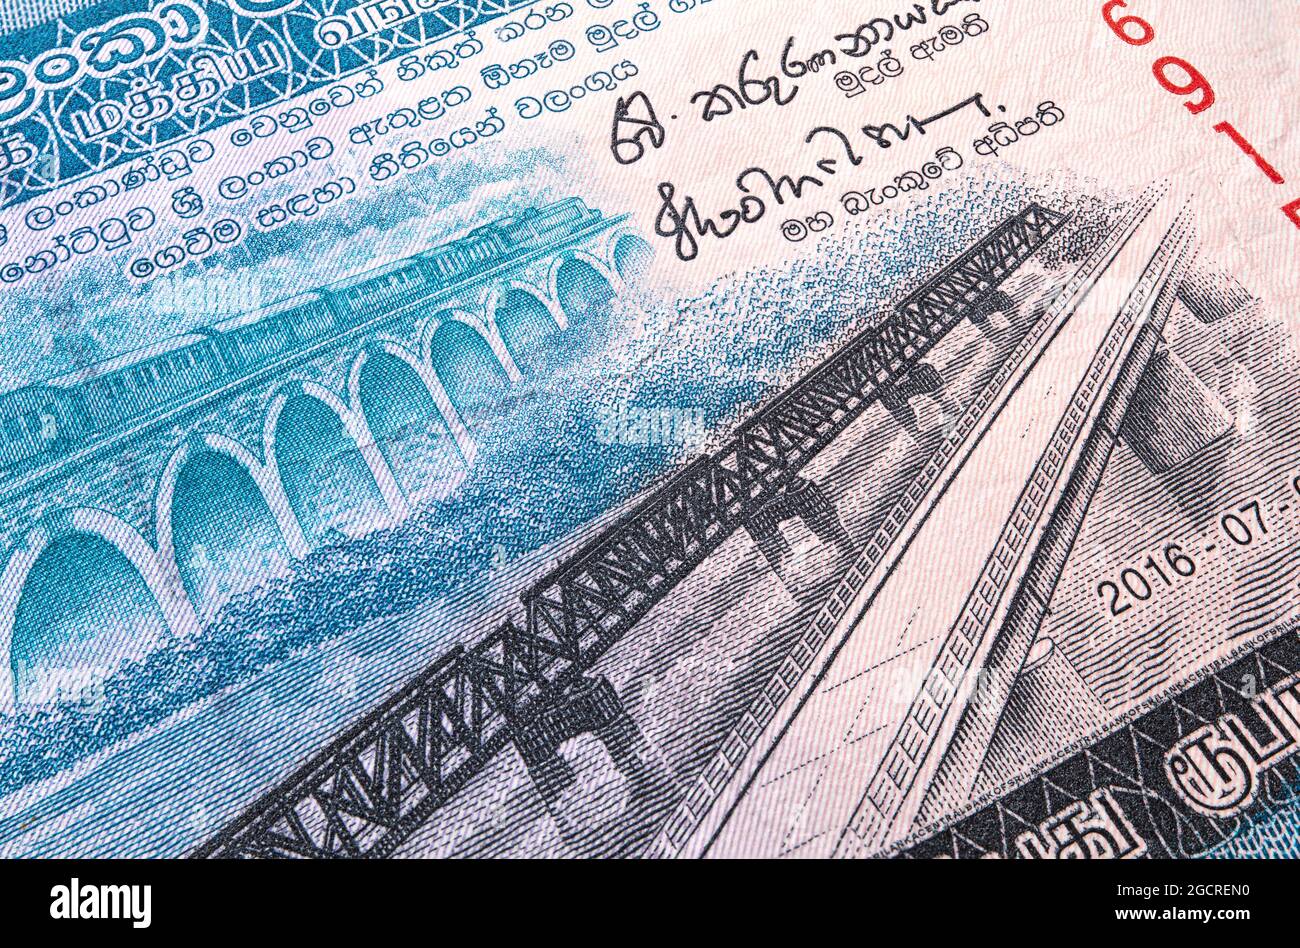 Macro photographie du sri lanka 50 roupies d'argent. Sri Lanka 50 roupies. Proche de la monnaie papier du Sri Lanka. Nouveau et ancien pont de Manampitiya sur le Banque D'Images